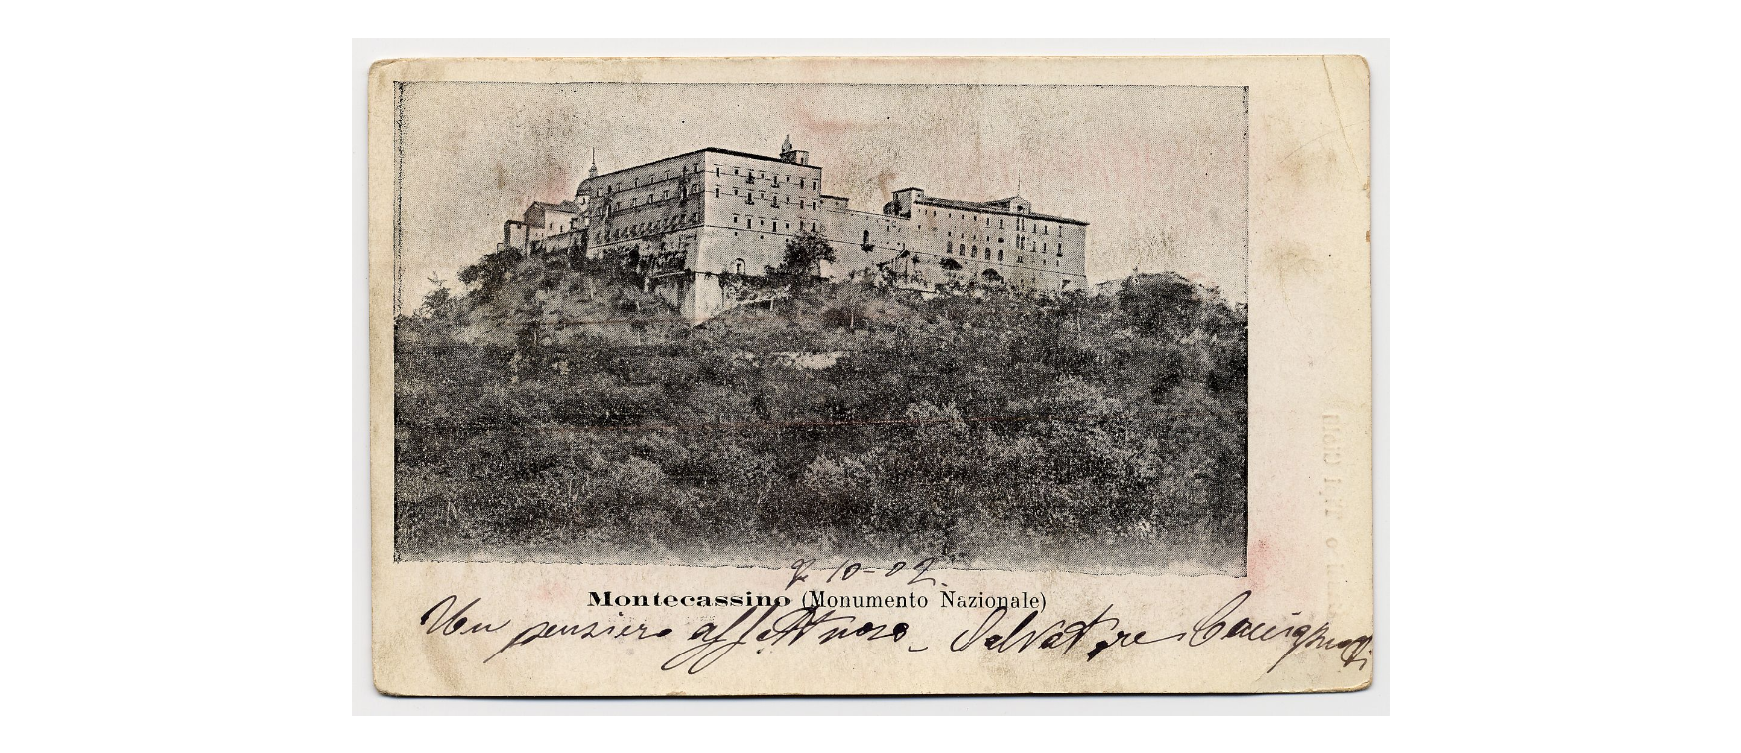 Fotografo non identificato, Cassino - Abbazia di Montecassino (lato ovest), 1902, cartolina, FFC014099.